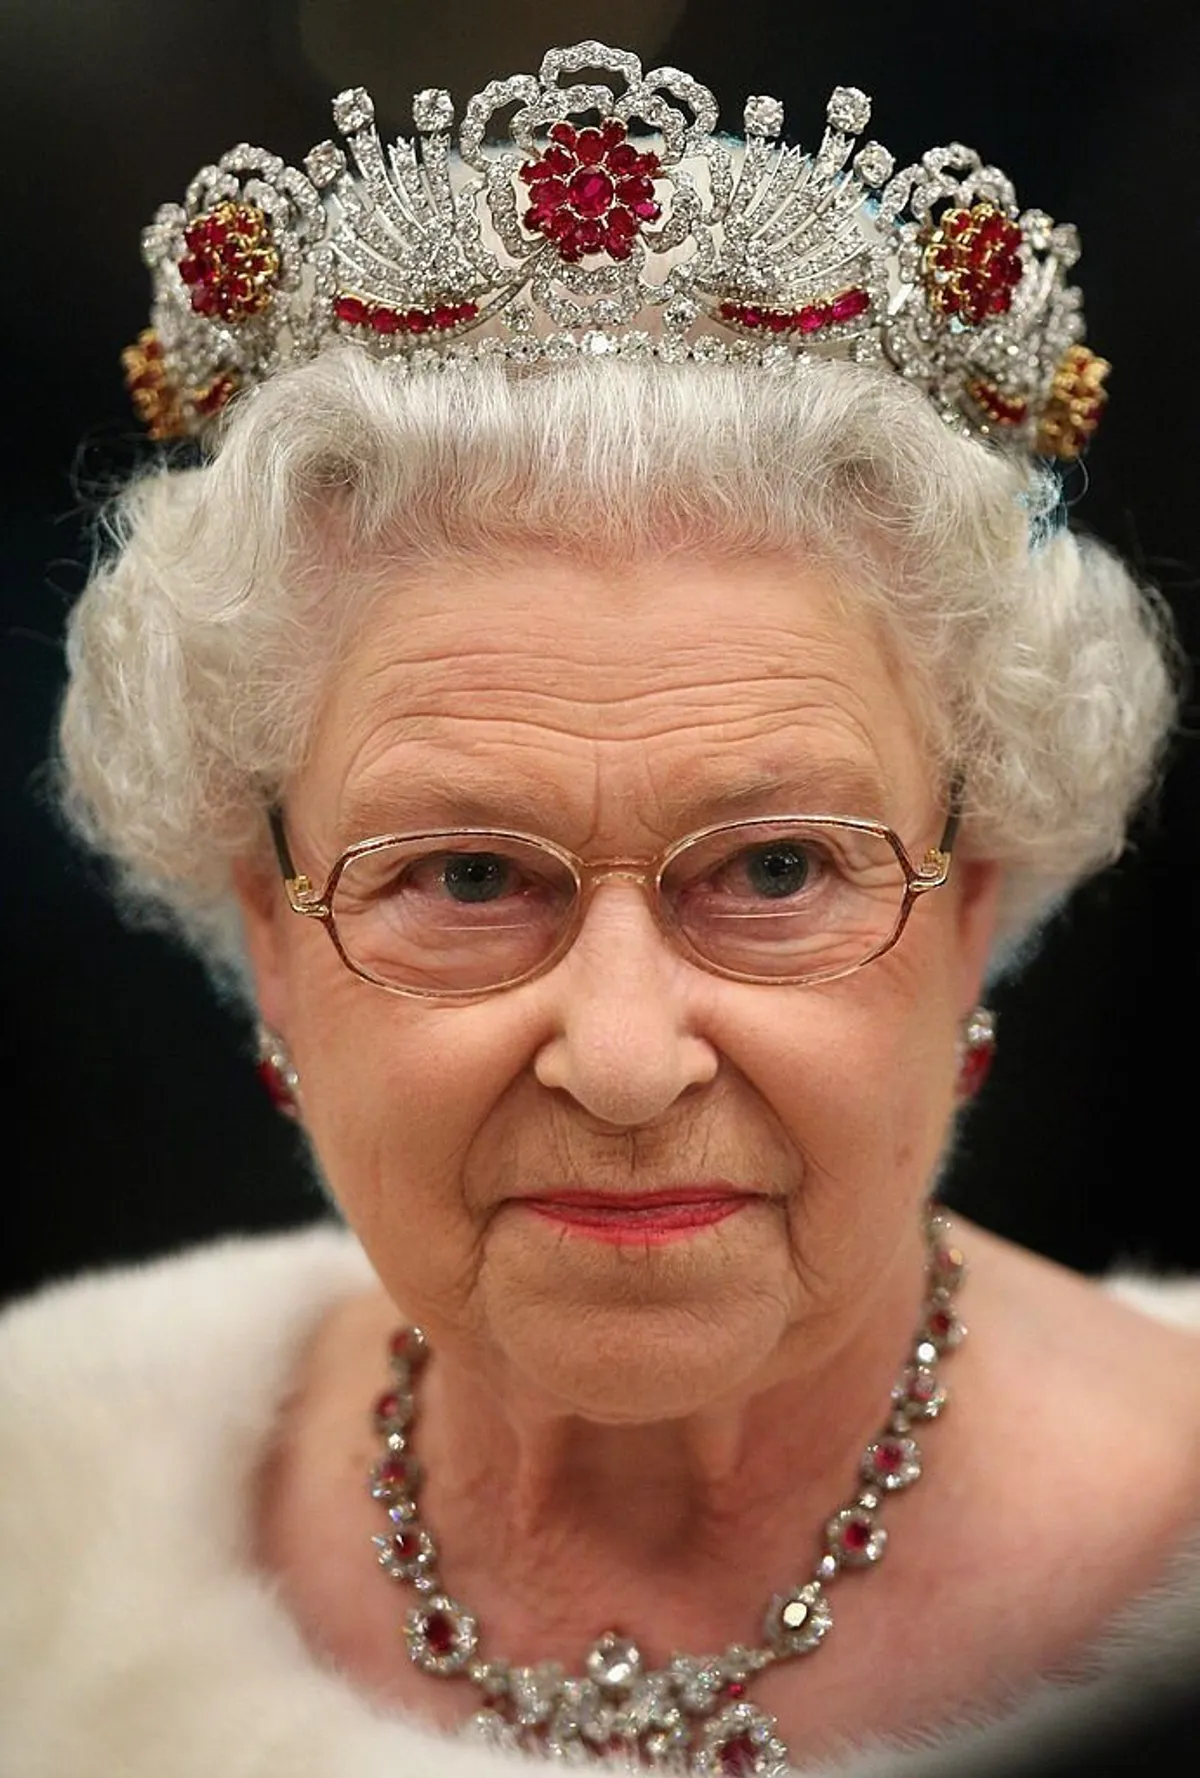 La reine Elizabeth II assiste à un banquet d'État au château de Bardo. | Source : Getty Images